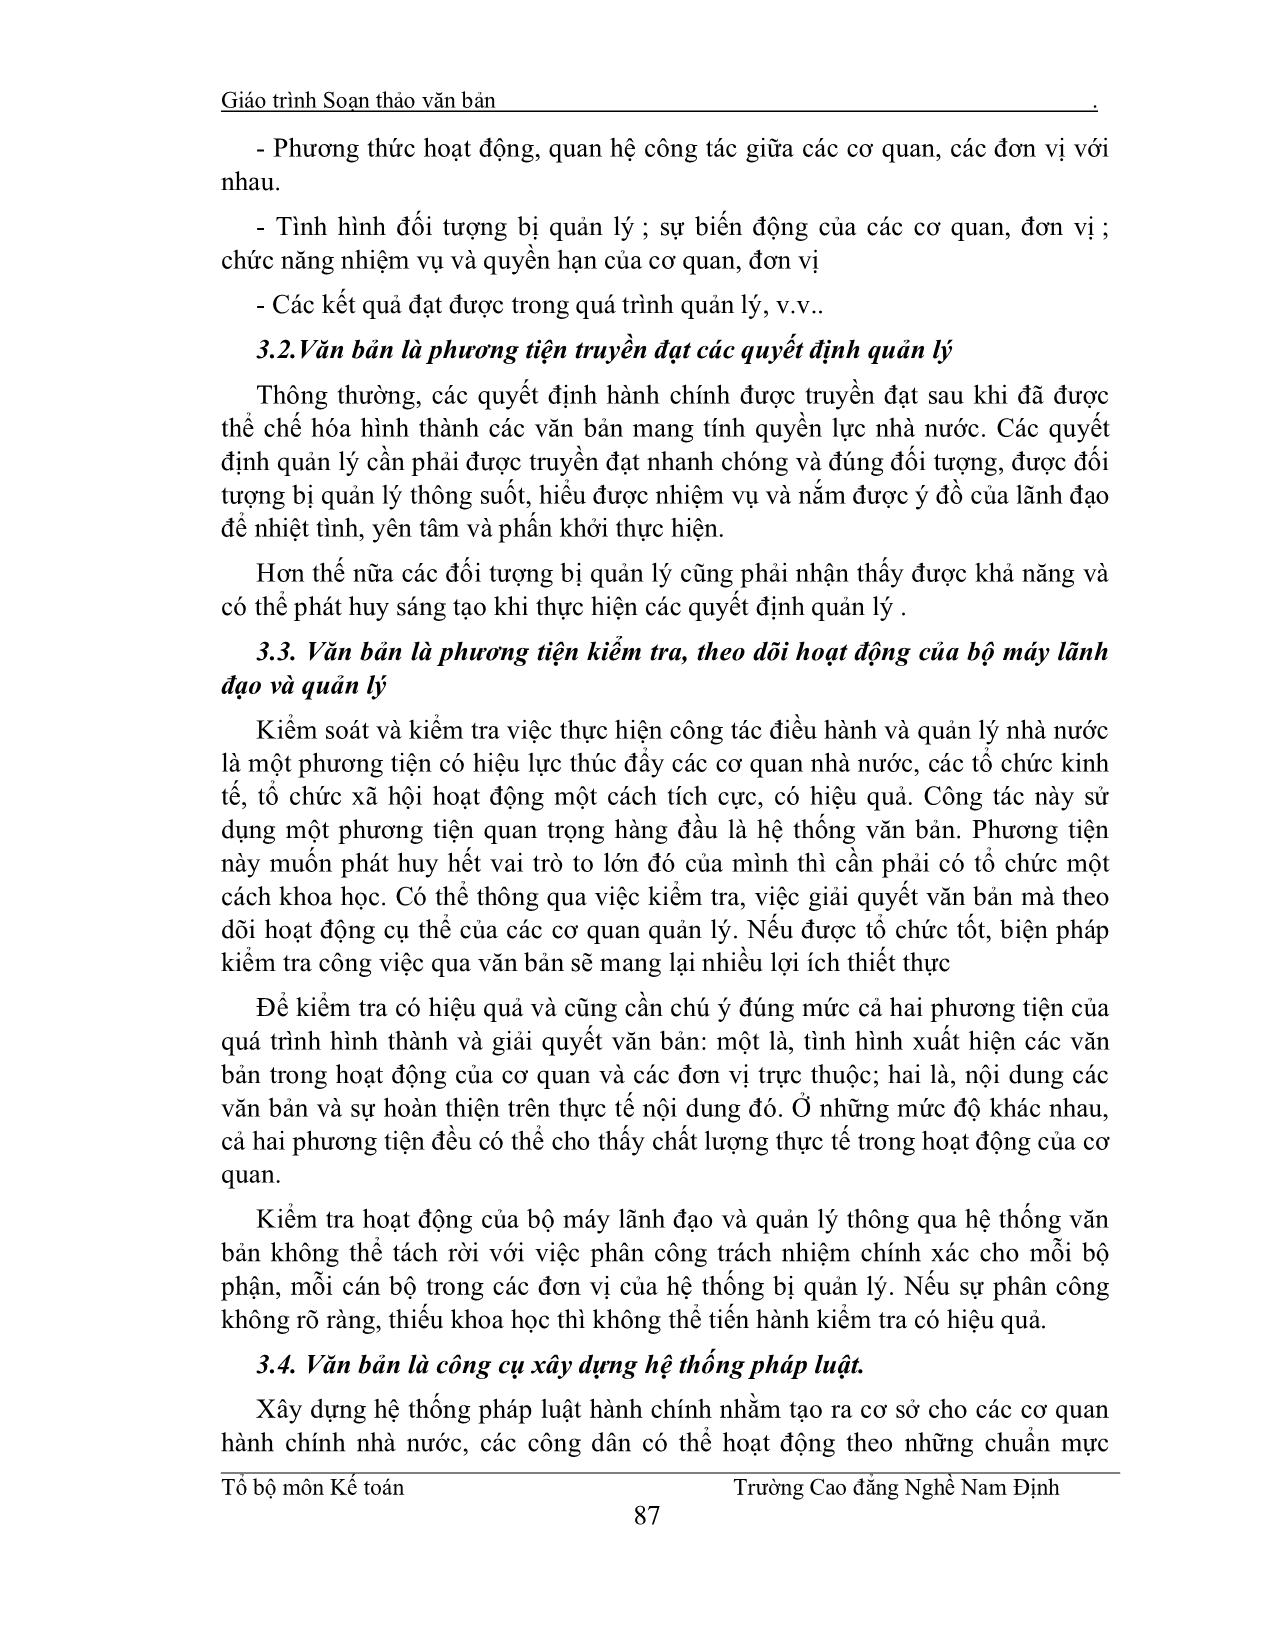 Giáo trình Soạn thảo văn bản (Phần 1) trang 4